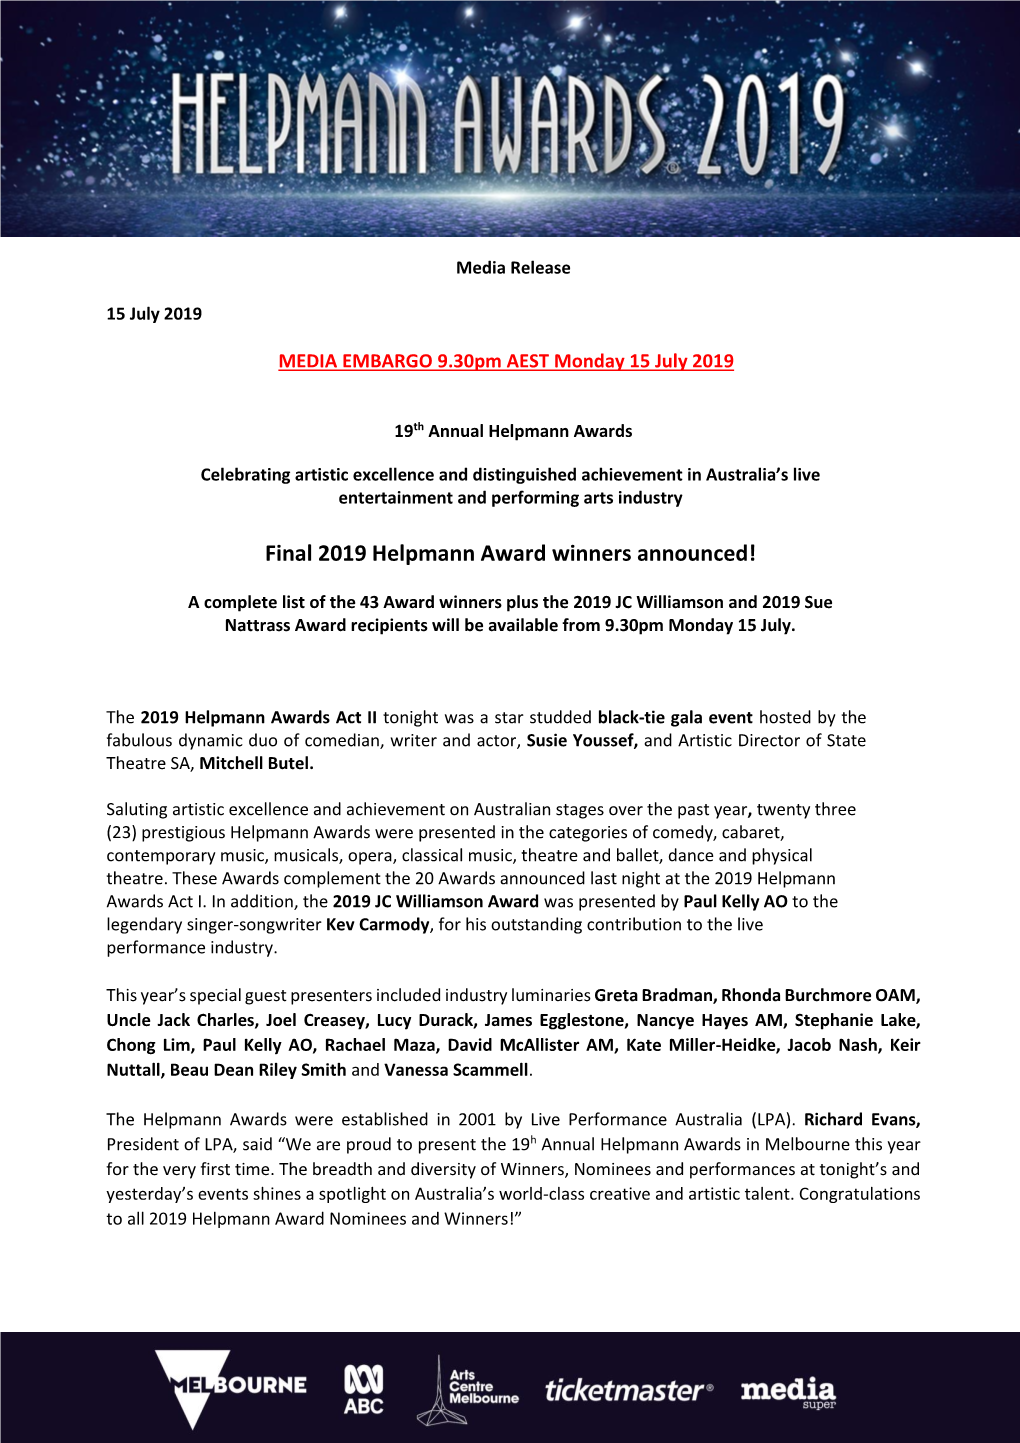 Final 2019 Helpmann Award Winners Announced!